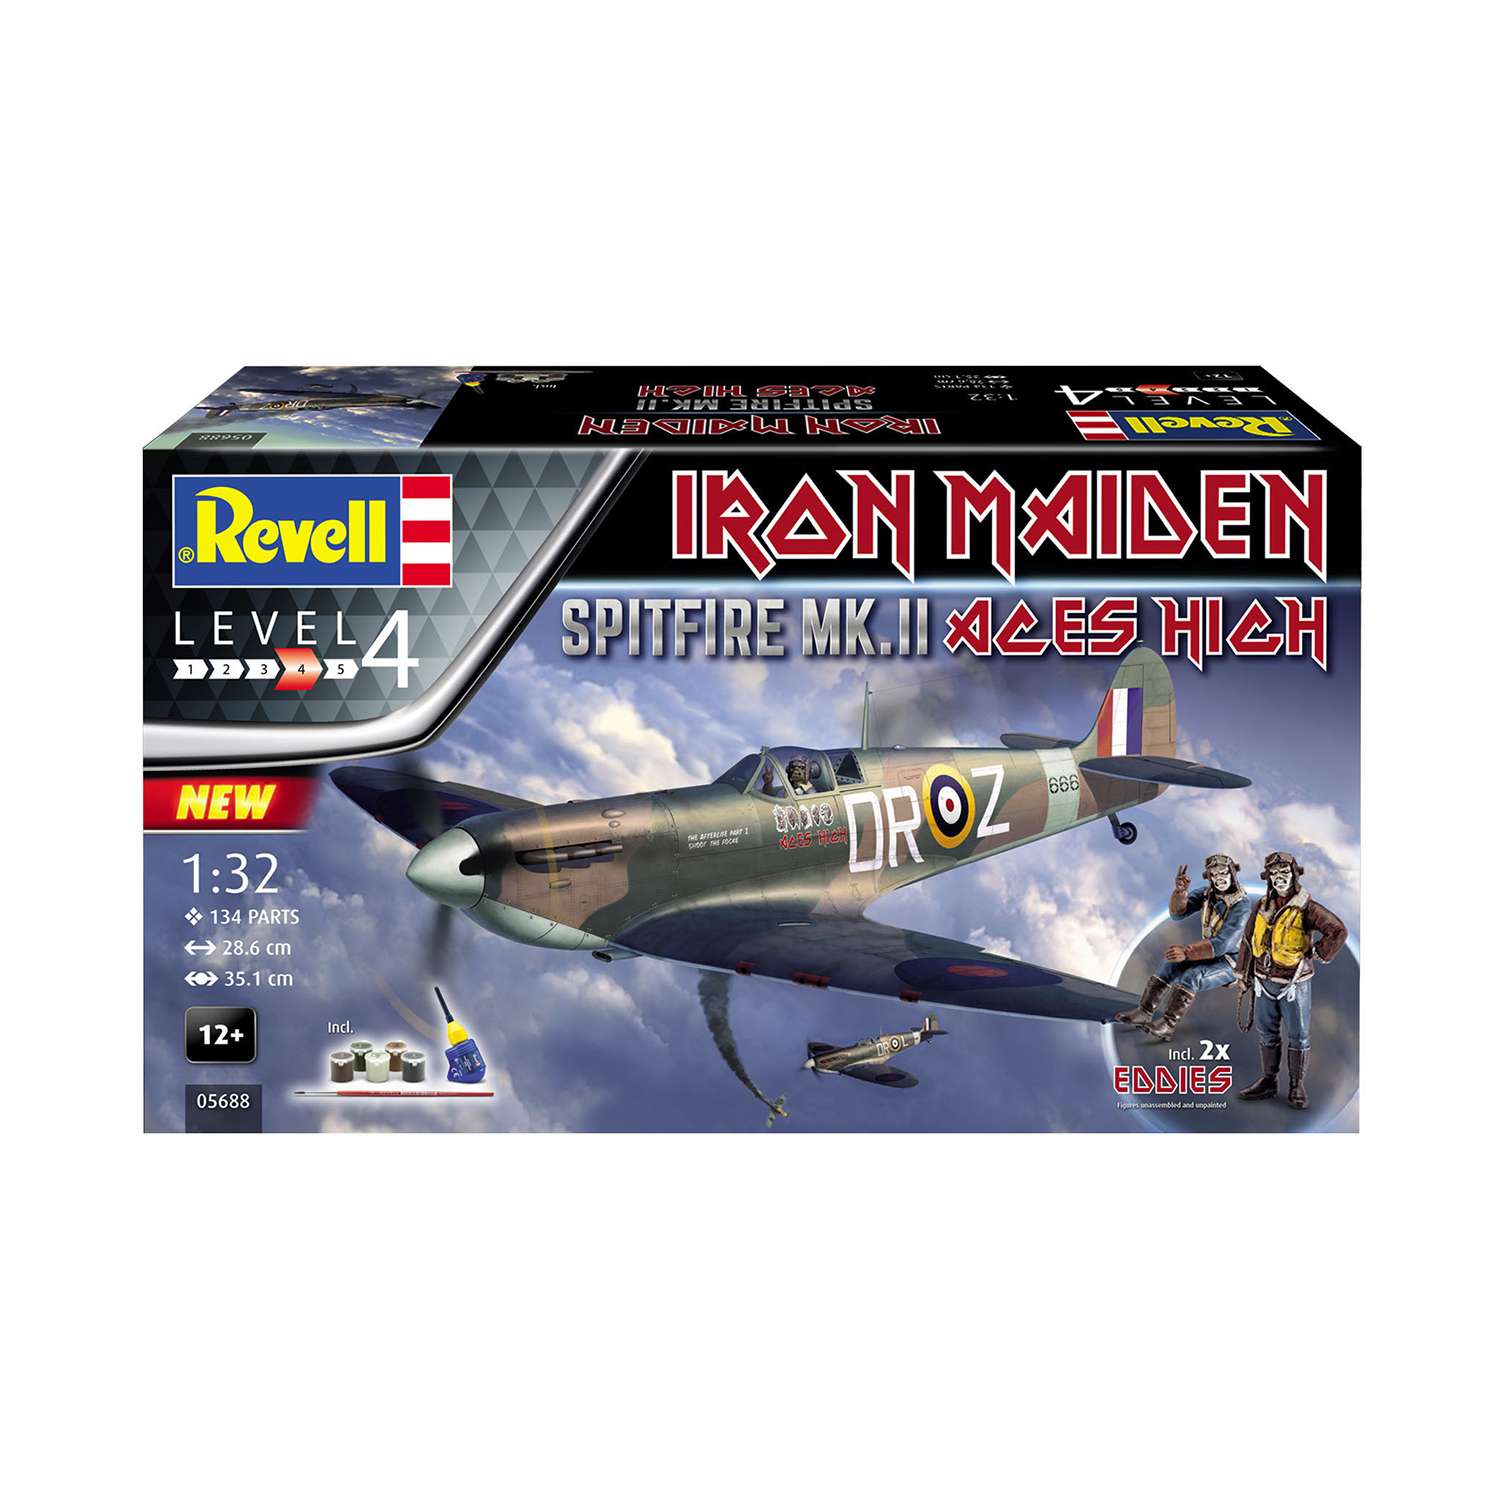 Сборная модель Revell Spitfire Mk.V Iron Maiden 05688 - фото 2